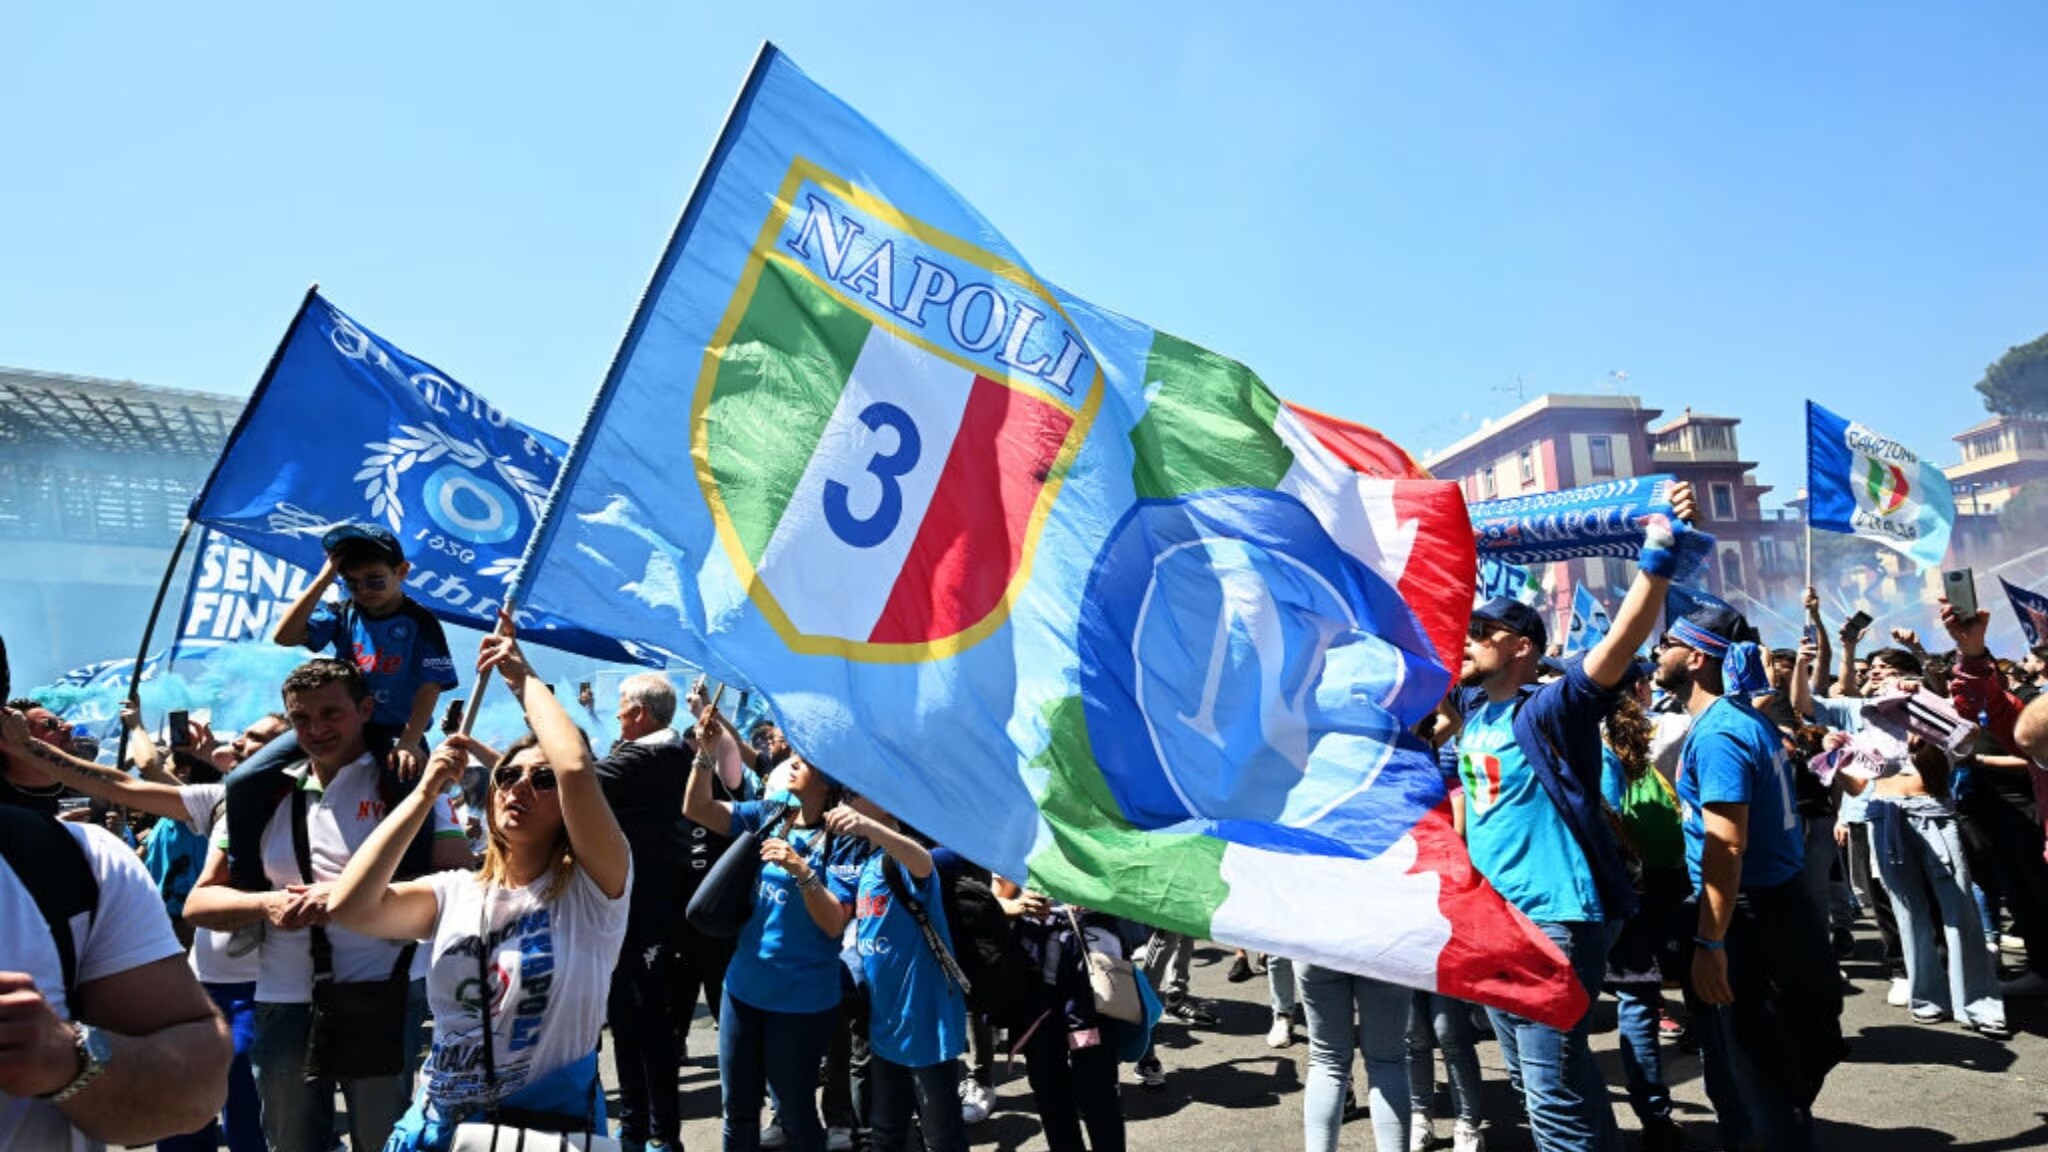 Festeggiamenti dei tifosi del Napoli che sventolano bandiere e striscioni.